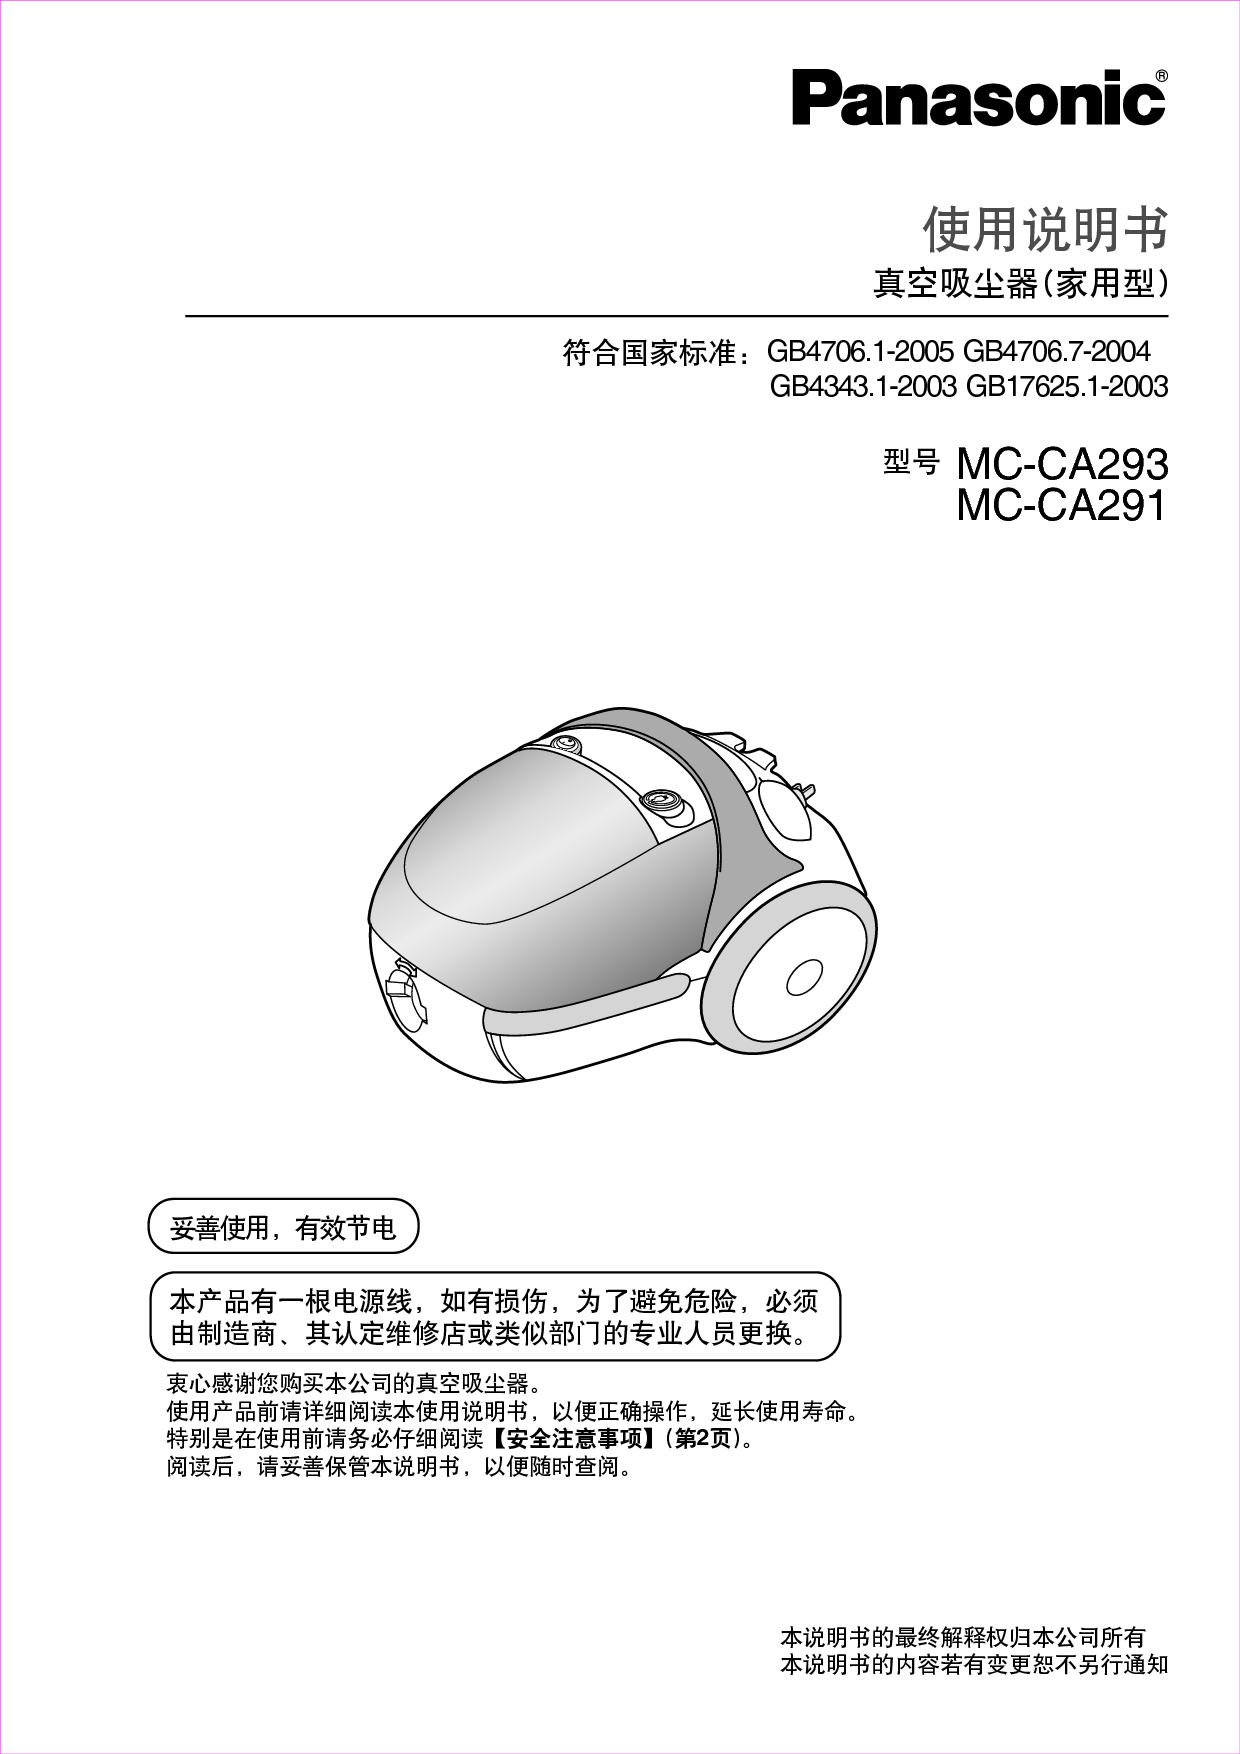 松下 Panasonic MC-CA291 说明书 封面